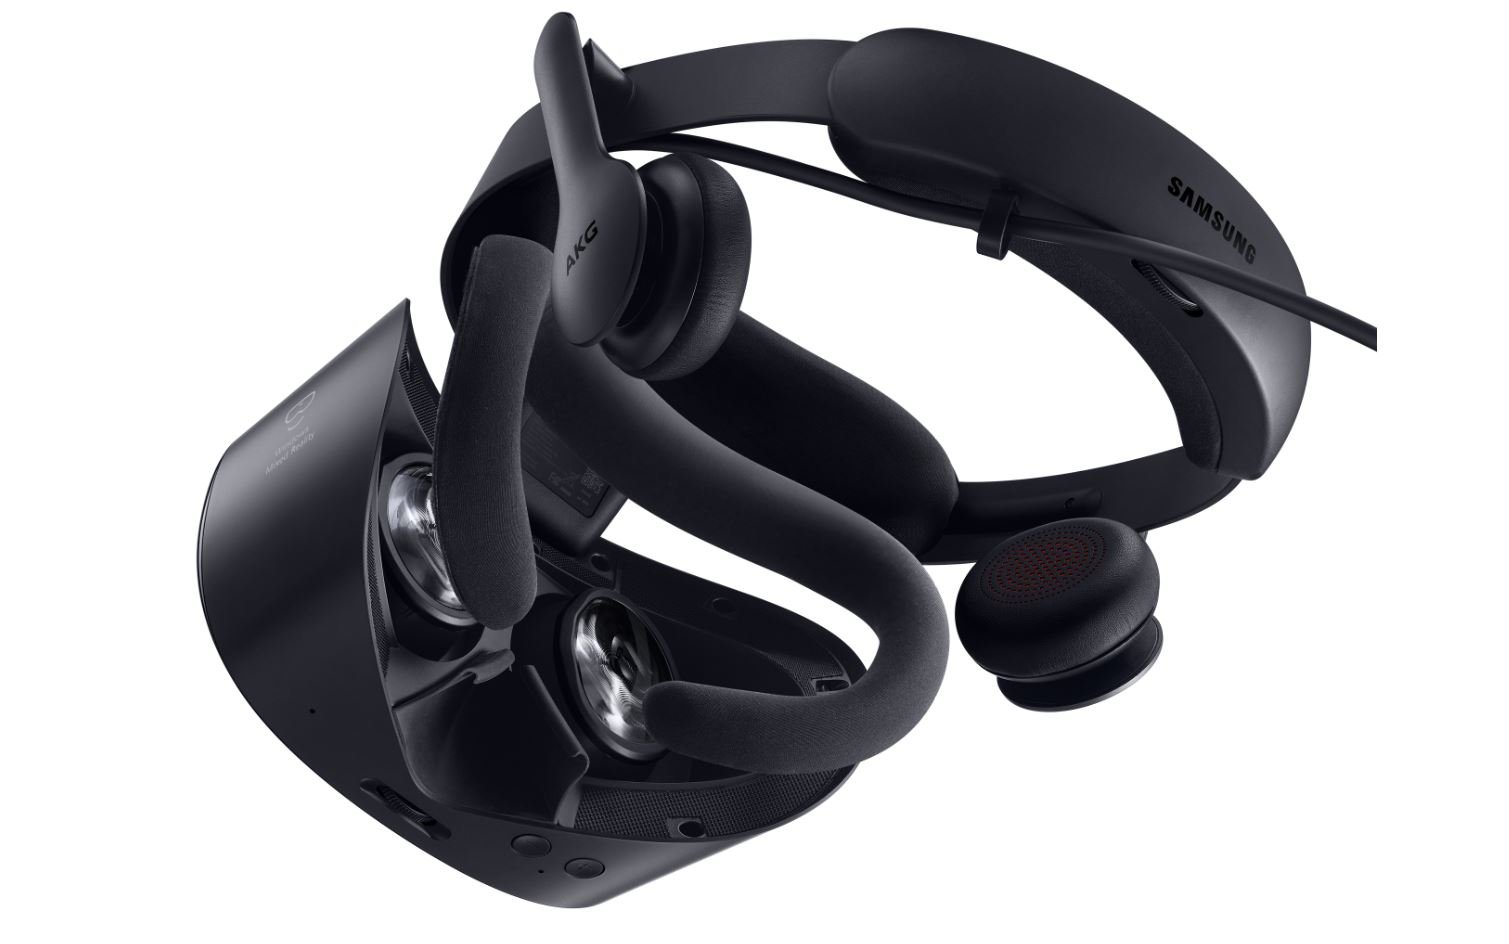 Ostrzeżenie o ofercie: zestaw słuchawkowy Samsung HMD Odyssey+ VR jest już dostępny za jedyne 229 USD